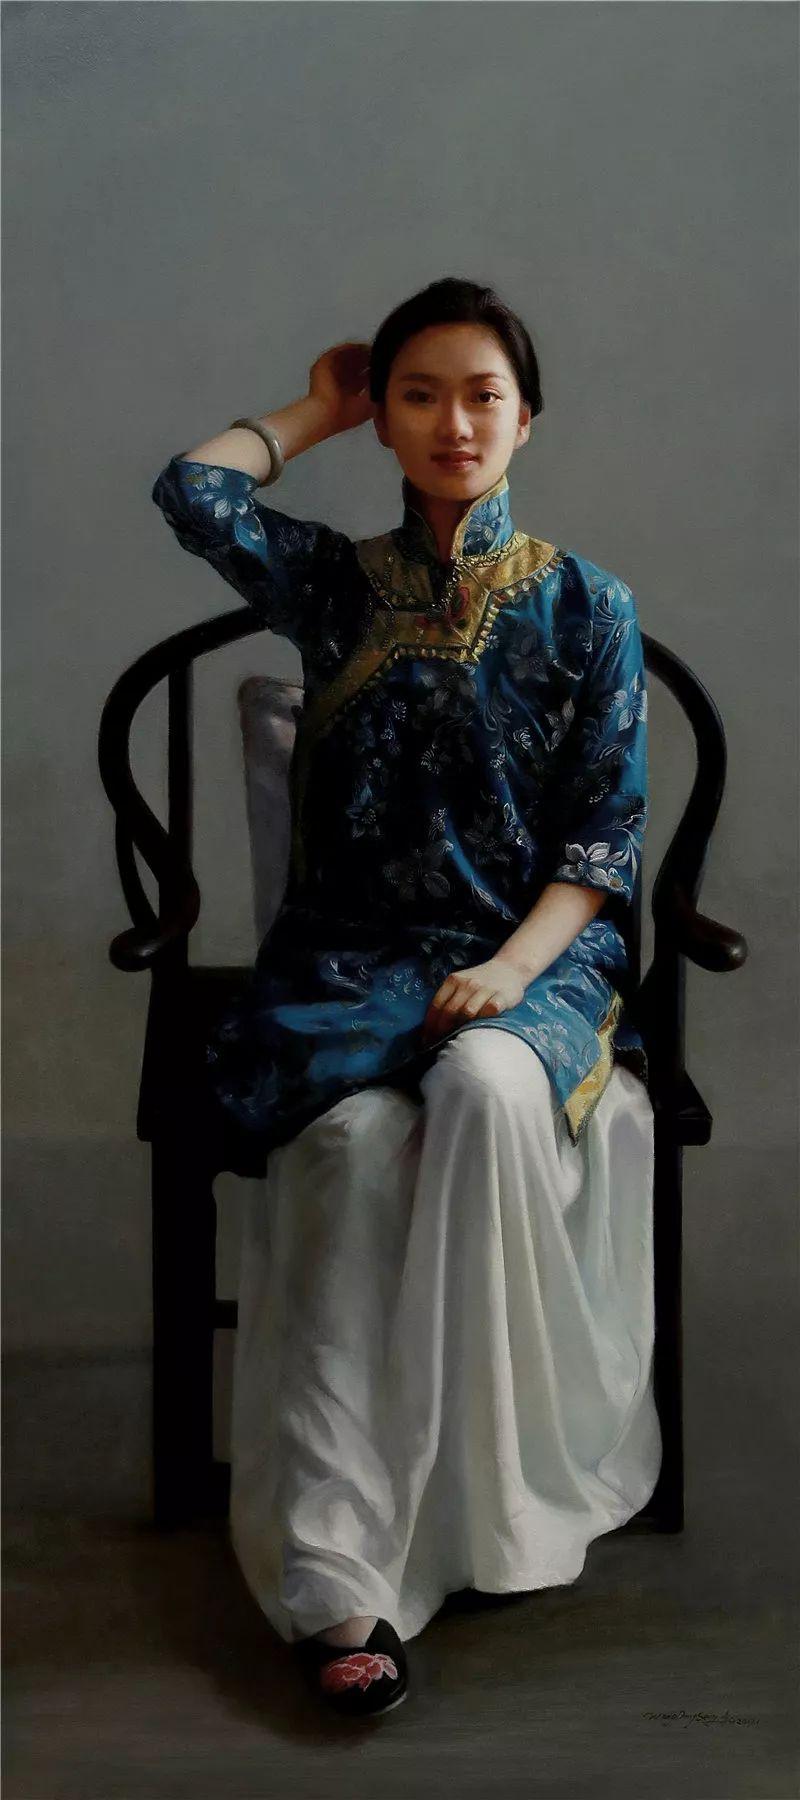 唯美精神—第二届中国当代经典写实人物油画名家作品邀请展西安站- 雪花新闻